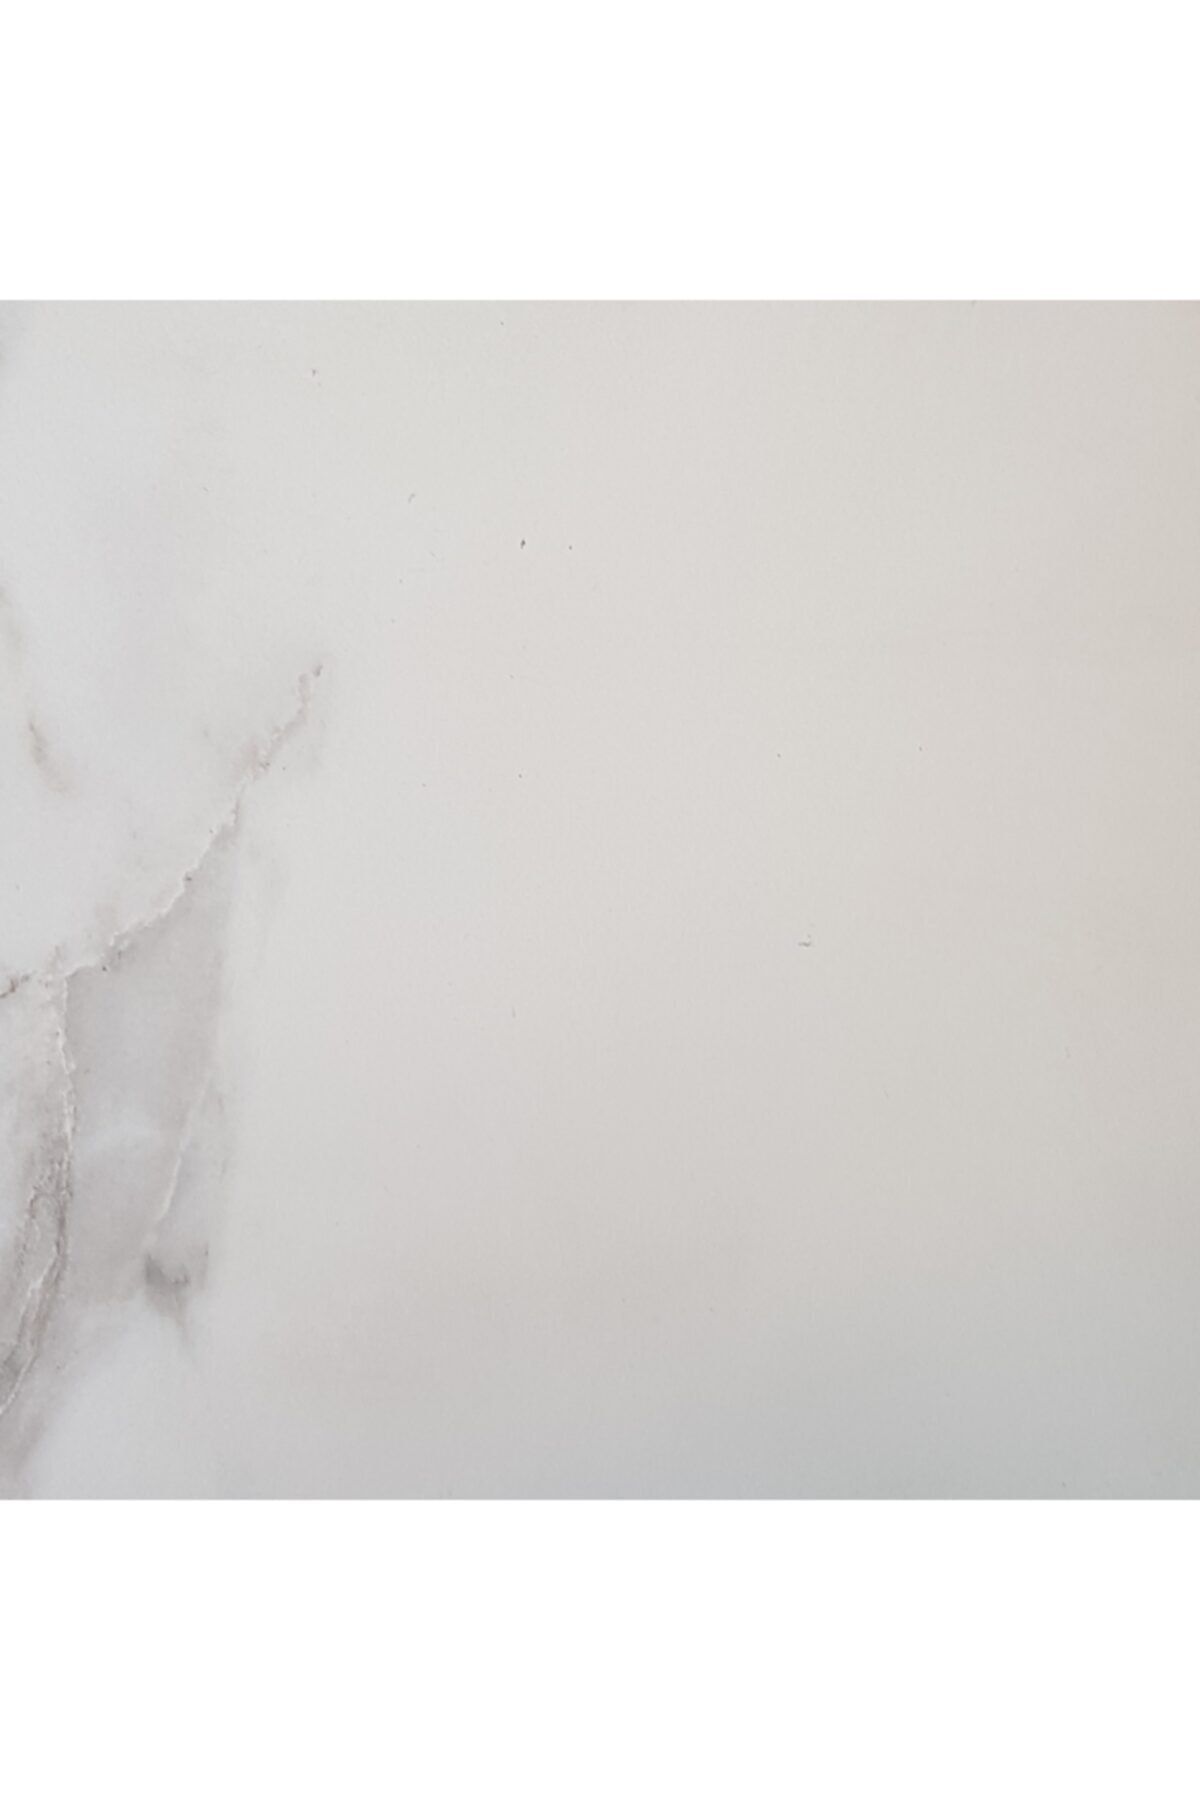 Yurtbay 30x30 Classıc Carrara Yer Duvar Seramiği